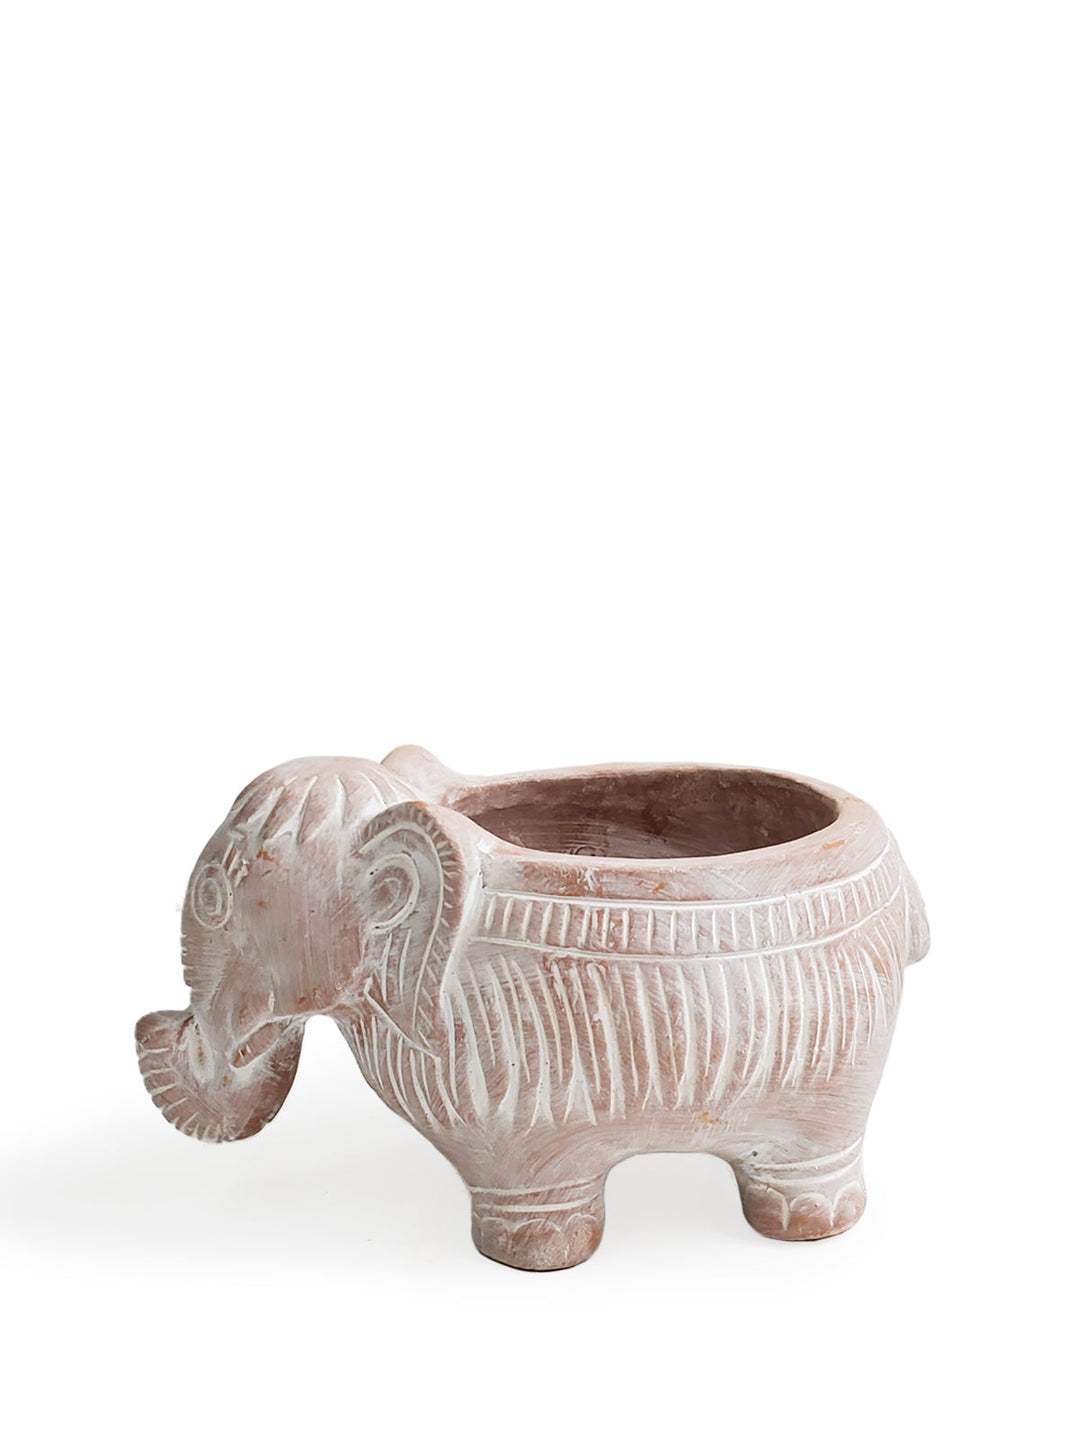 Terracotta Pot - Elephant by KORISSA